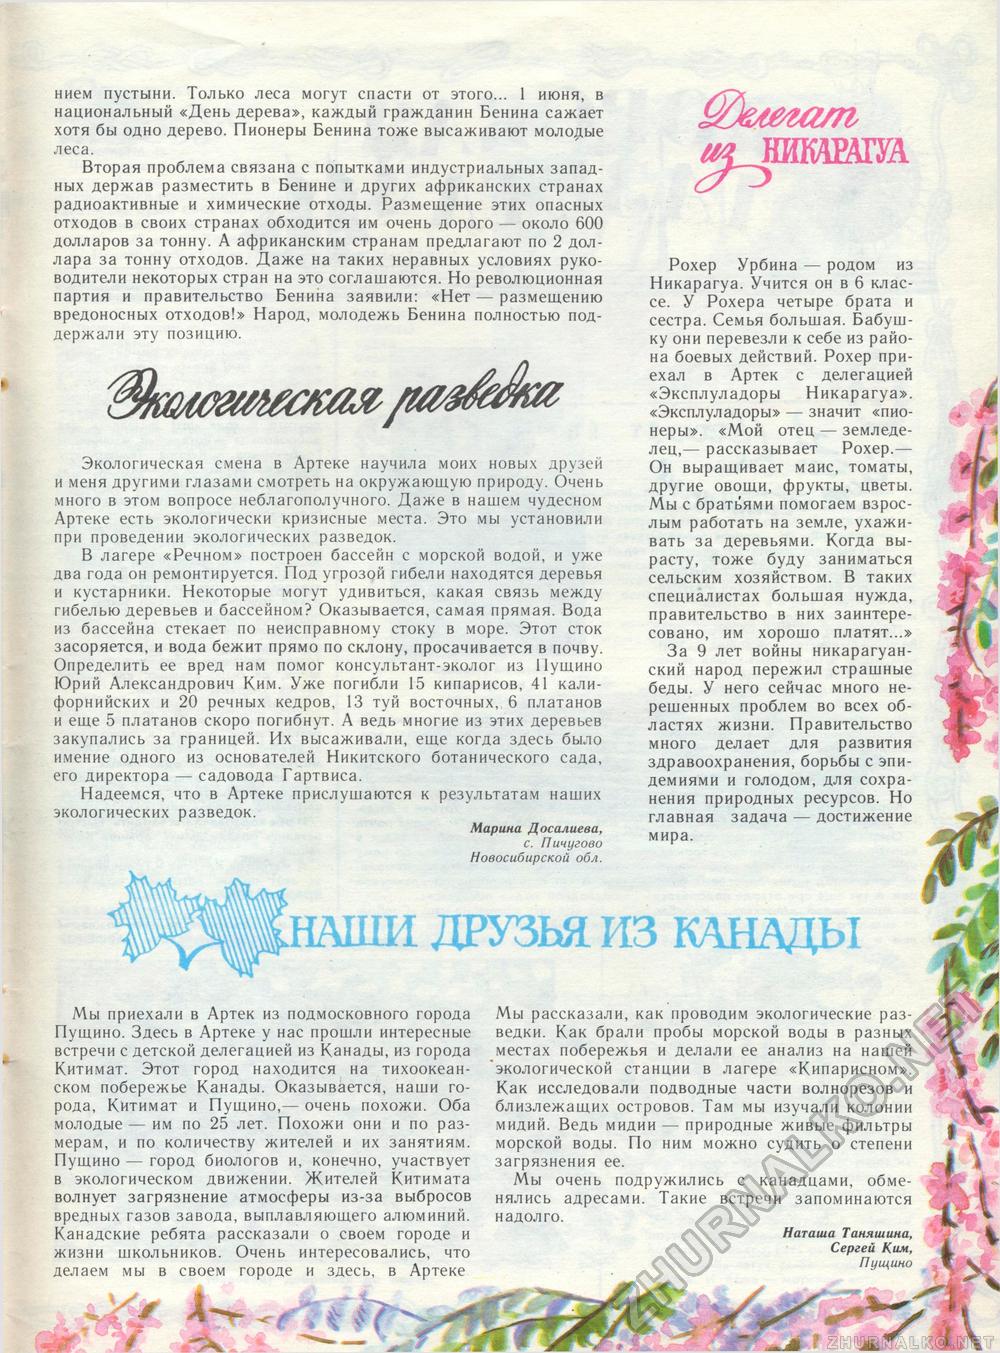  1989-05,  44